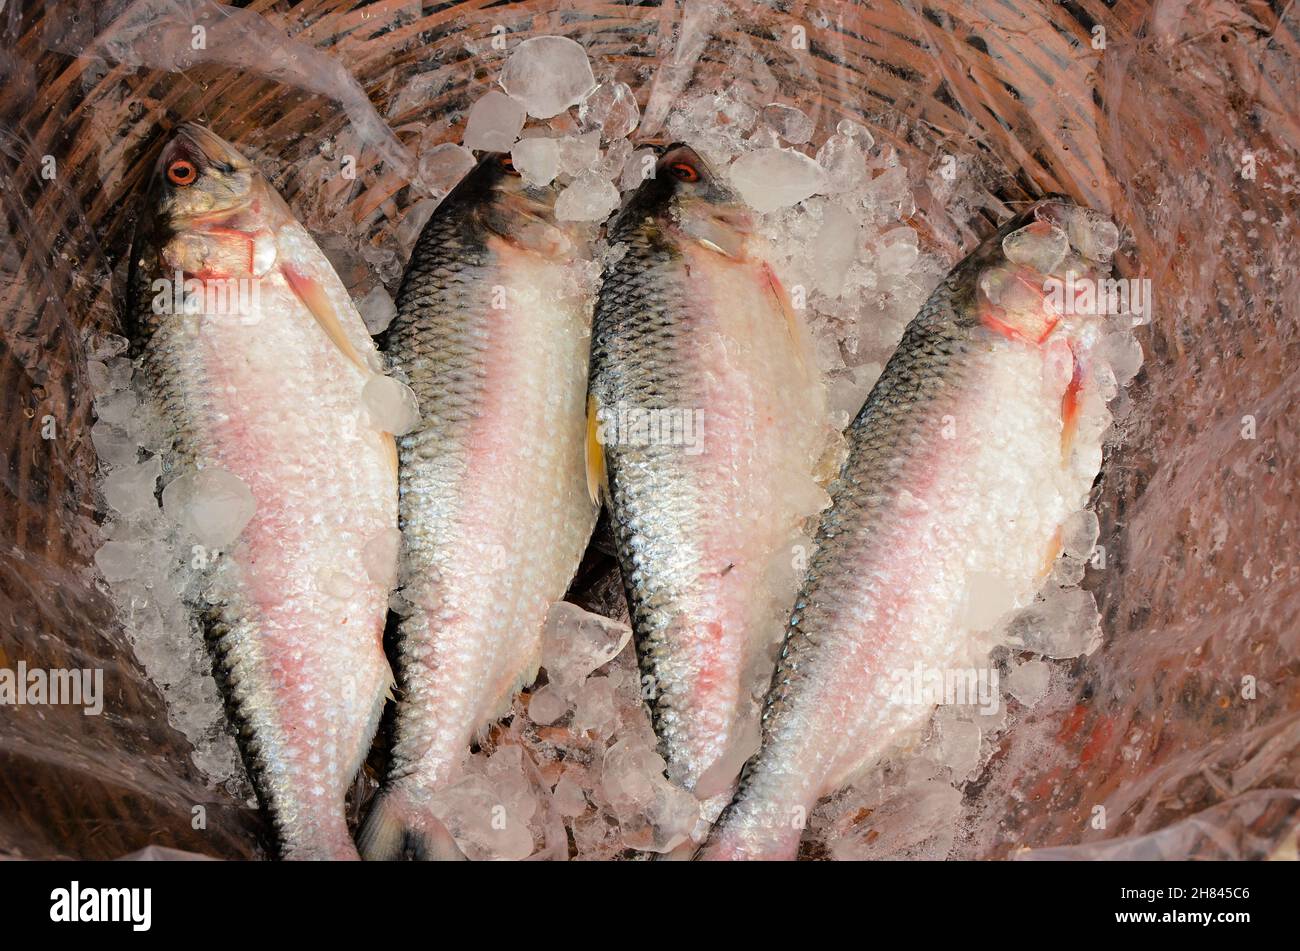 Frischer hilsa-Fisch wurde zum Verkauf angeboten Stockfoto